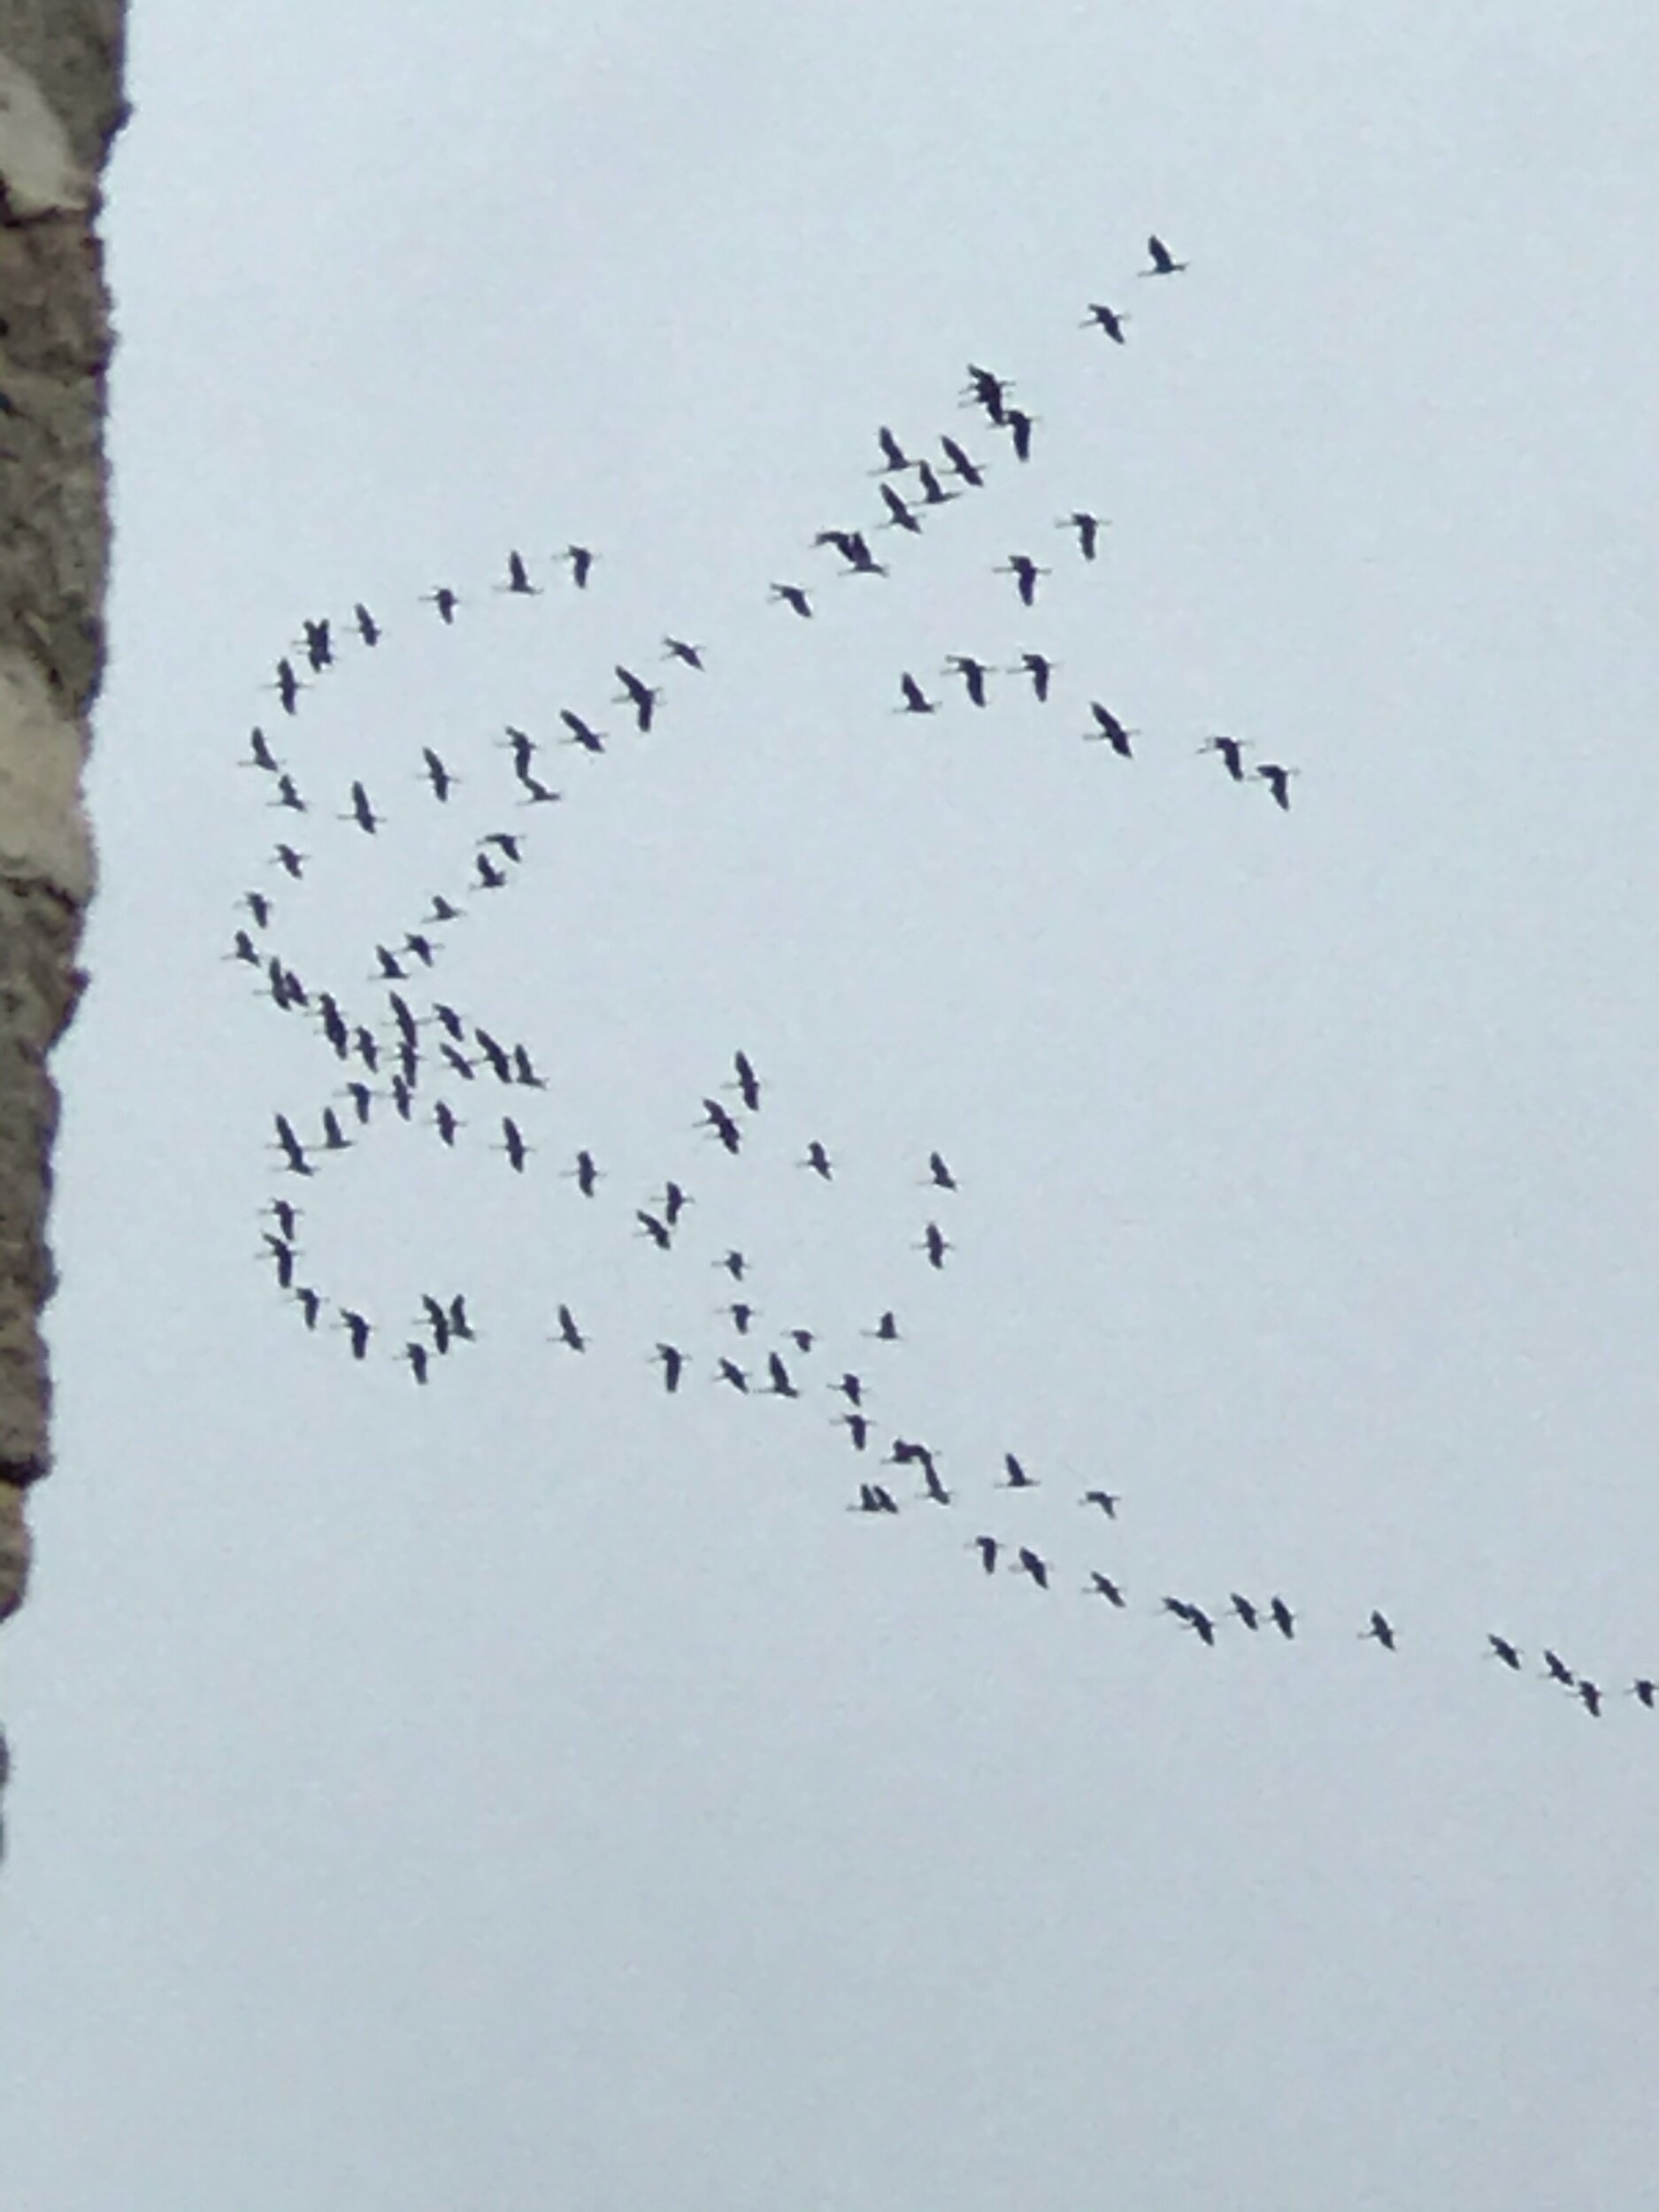 Migrating Cranes.